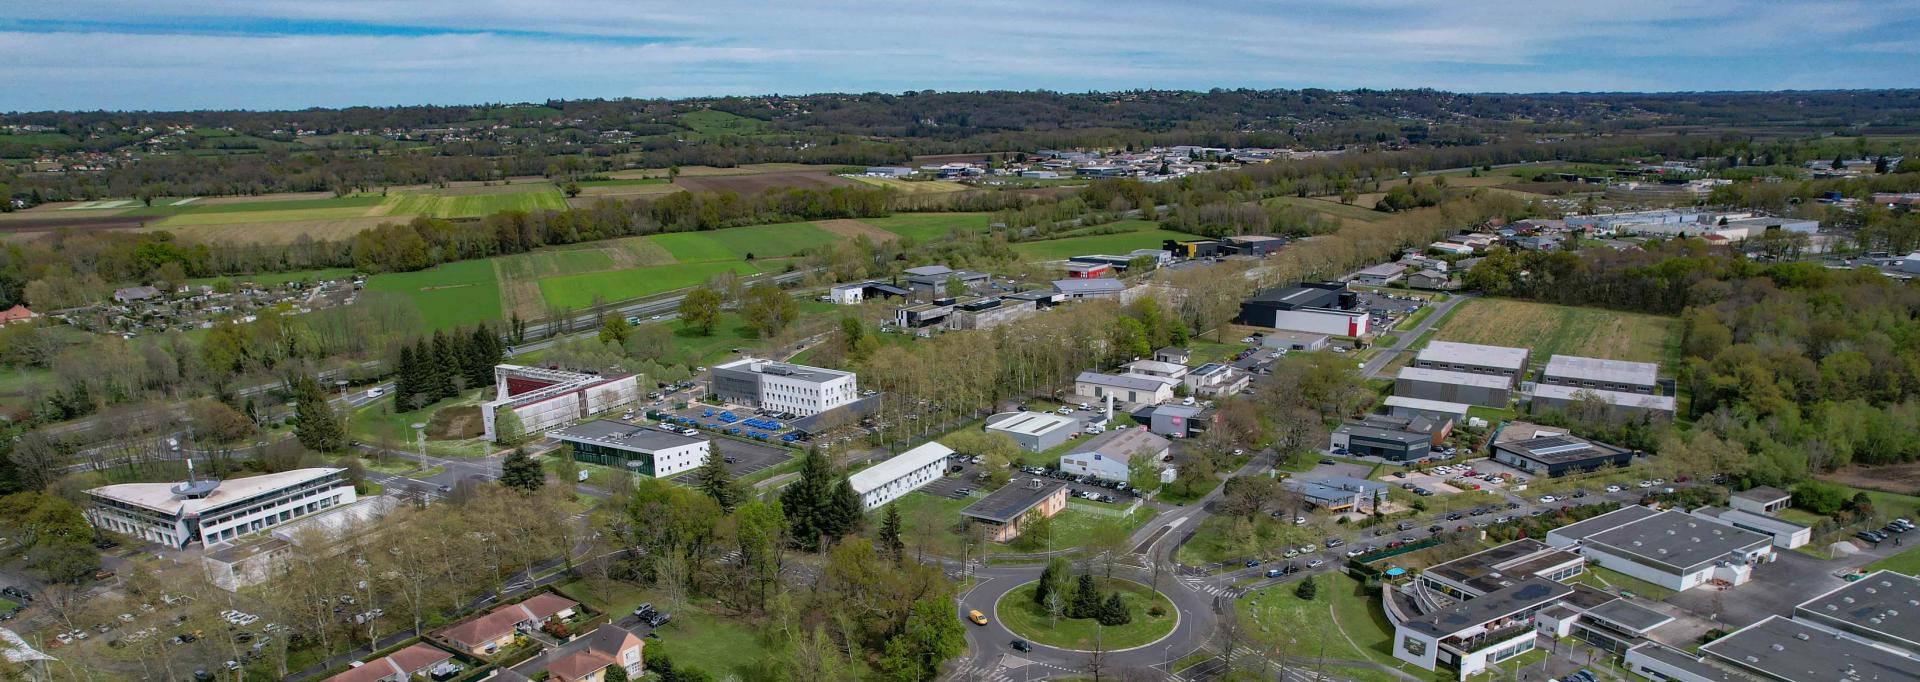 Zone d'activité économique Pau Pyrénées vue drone